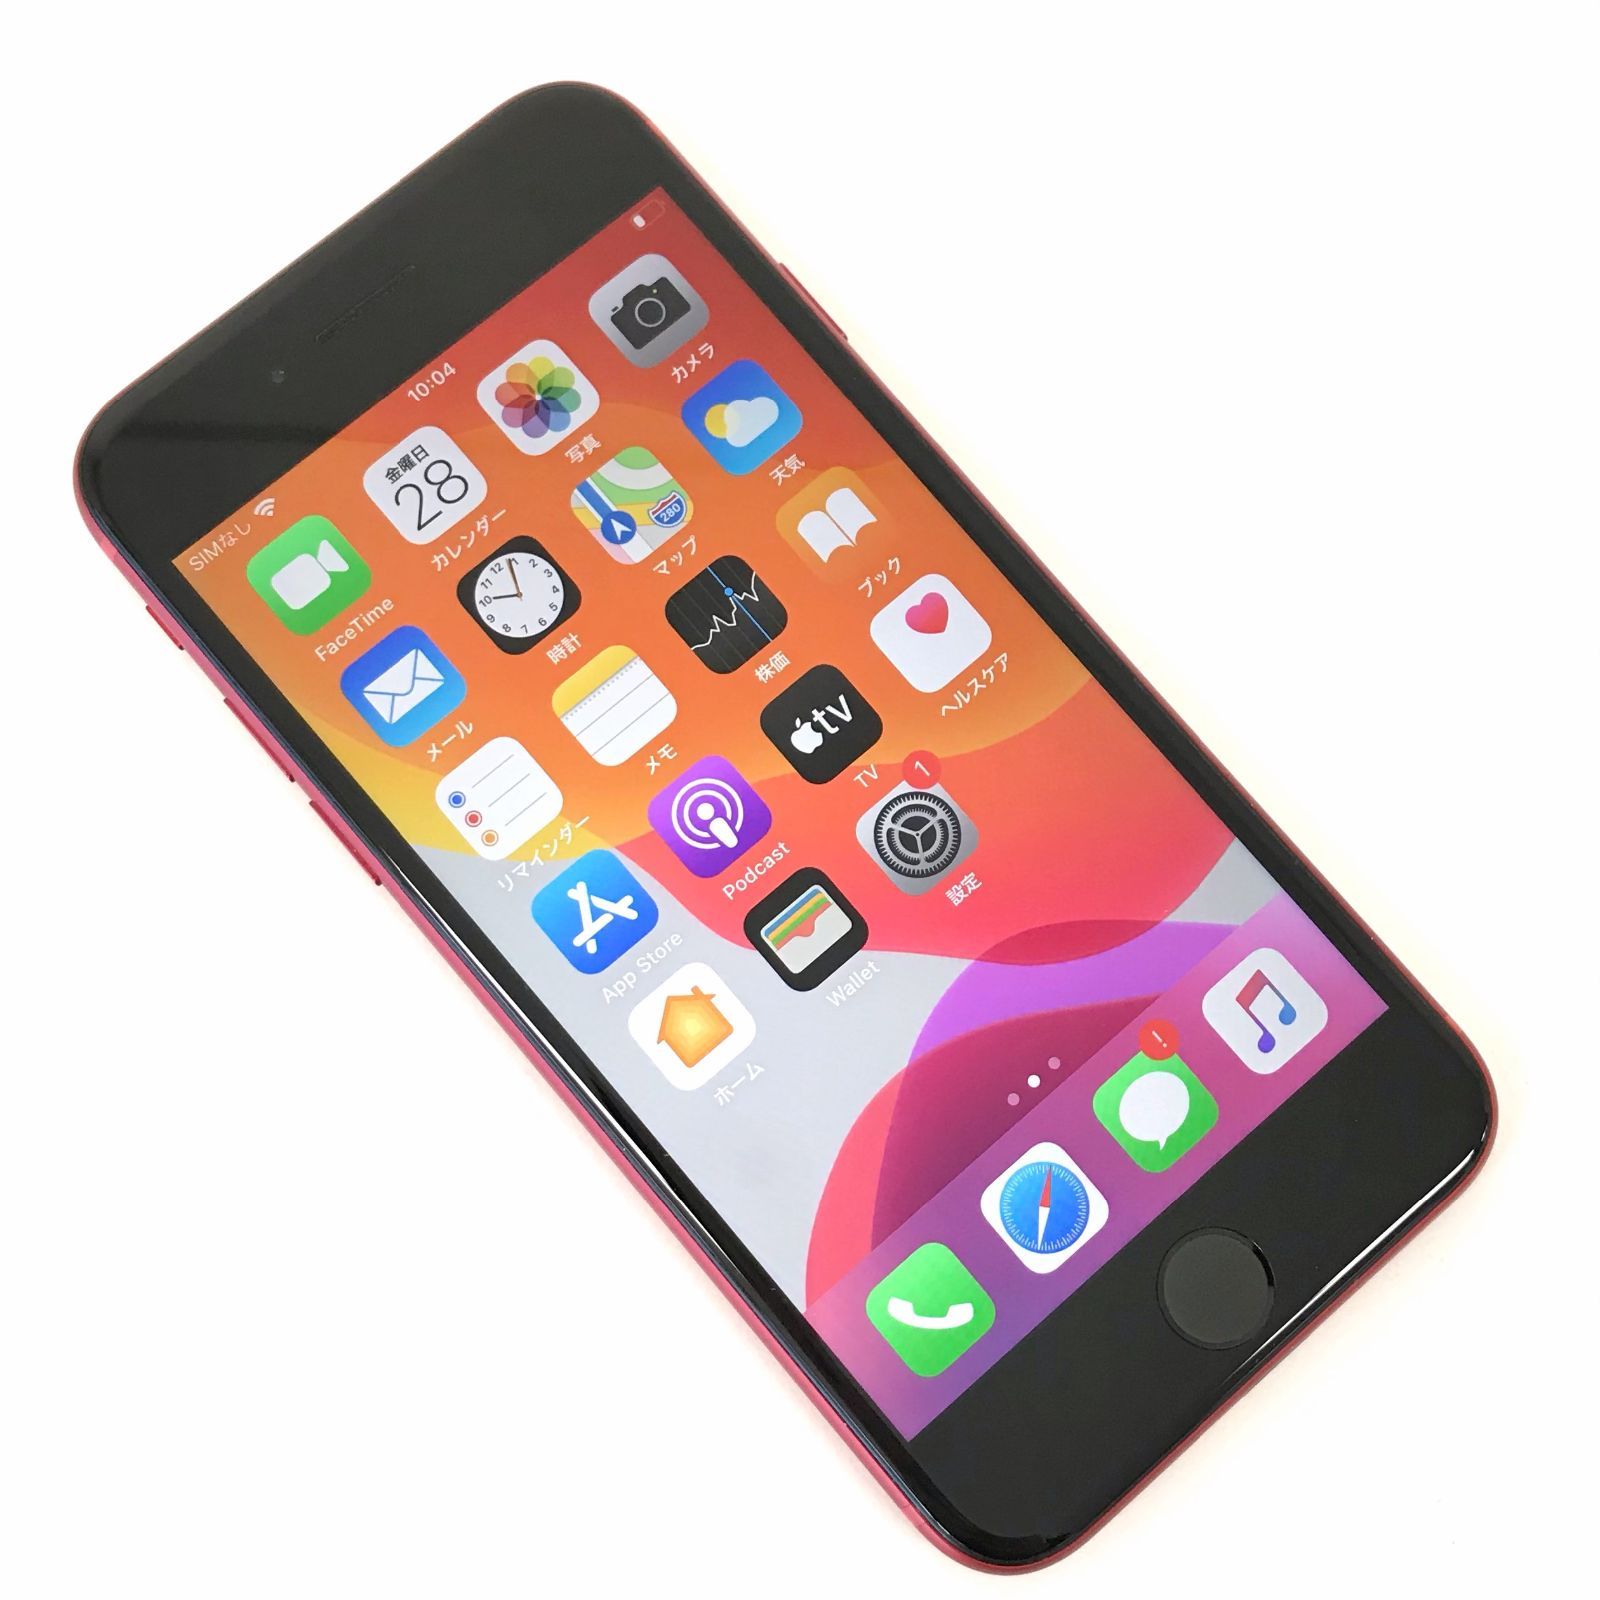 θ【SIMロック解除済み】iPhone 8 64GB (PRODUCT)RED - メルカリ